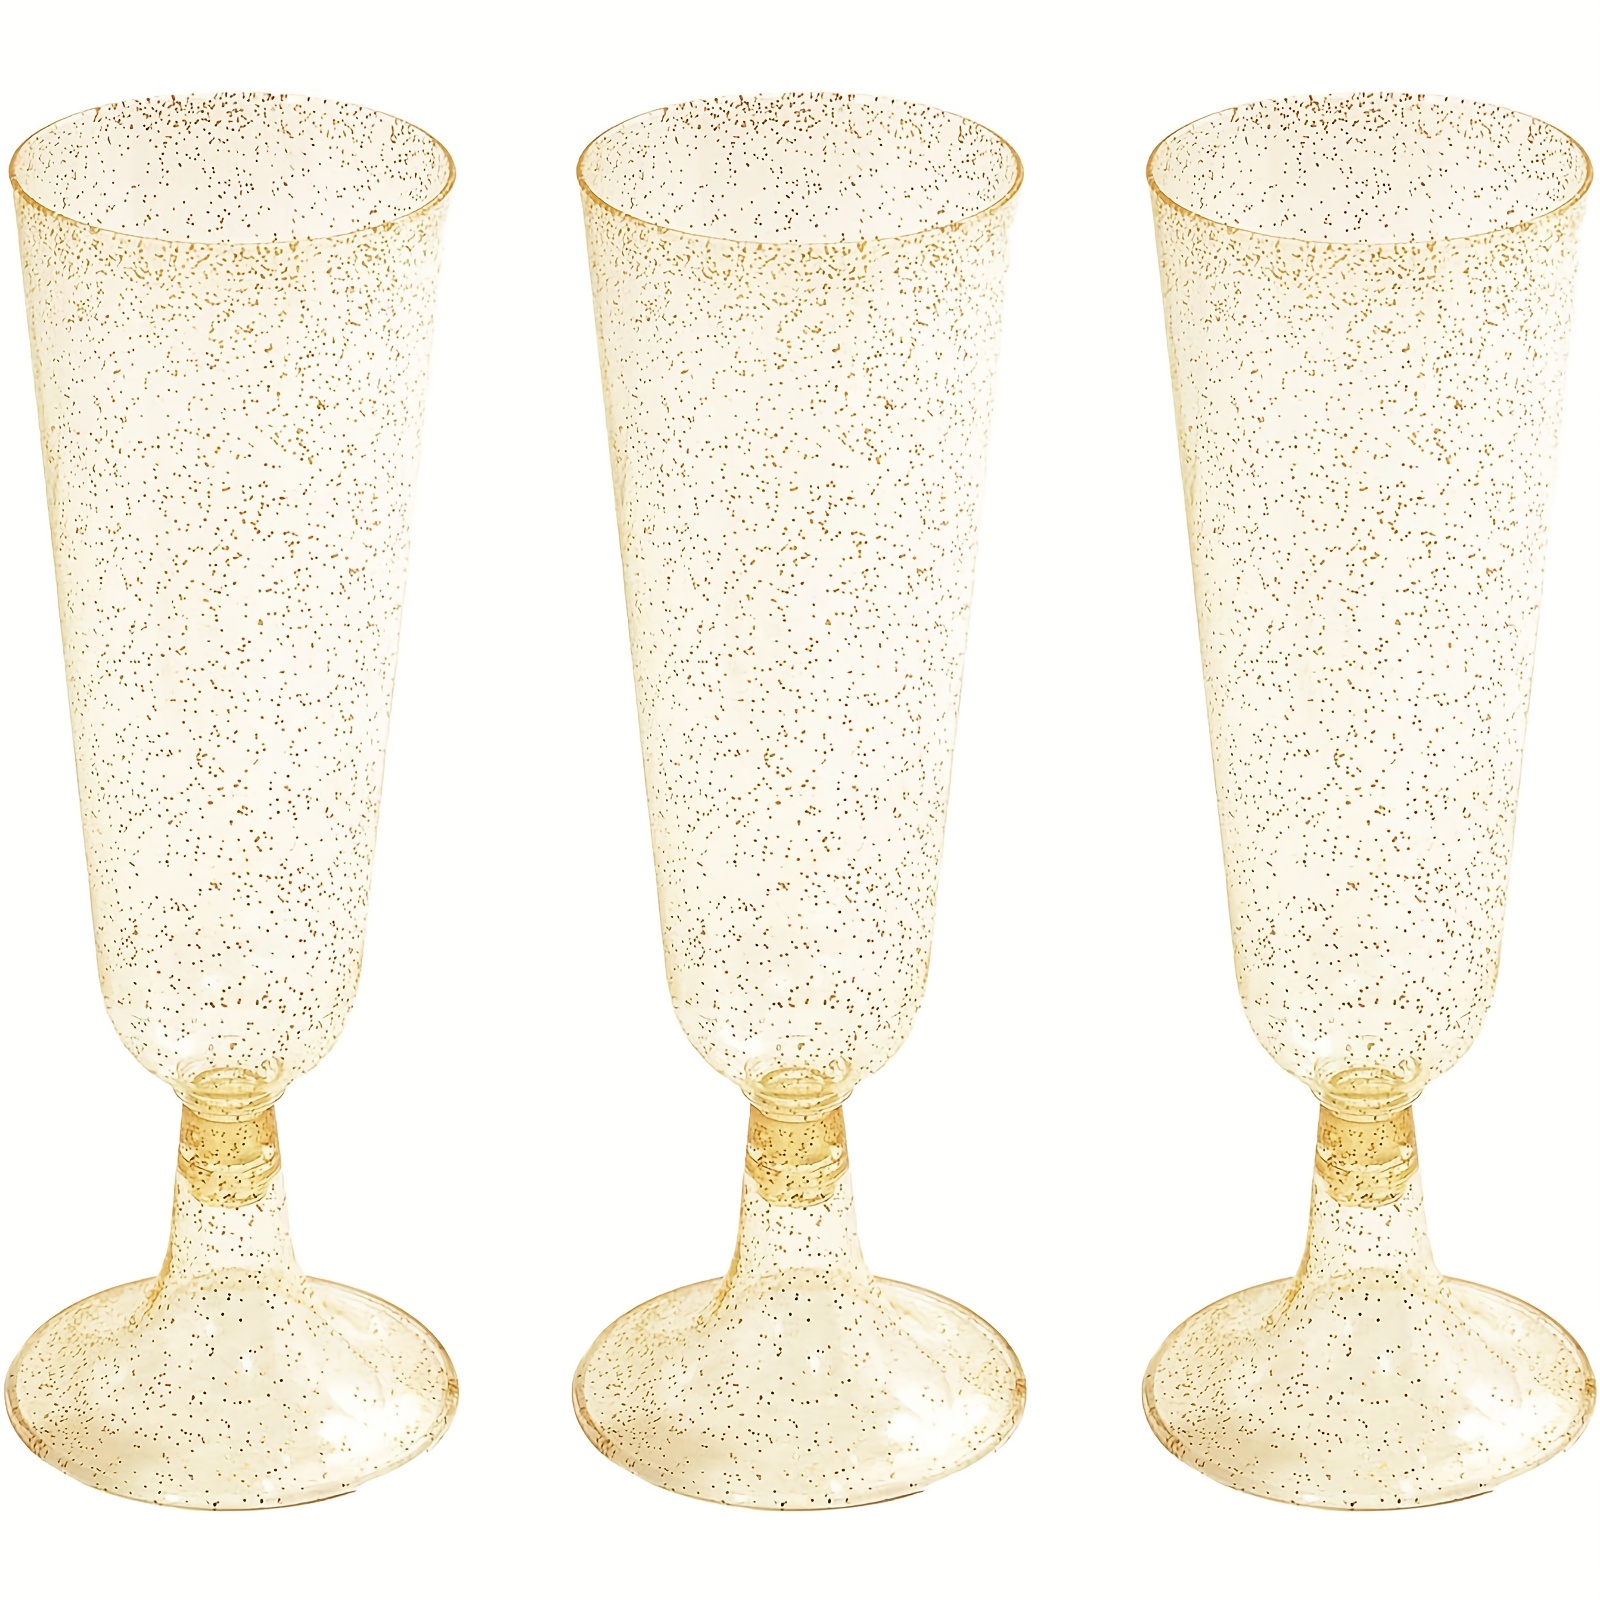 Bicchiere Vino, Bicchiere Vino In Plastica Anticaduta, Bicchiere Vino  Portatile Staccabile Bicchiere Champagne Picnic Campeggio Allaperto - Sport  E Tempo Libero - Temu Italy